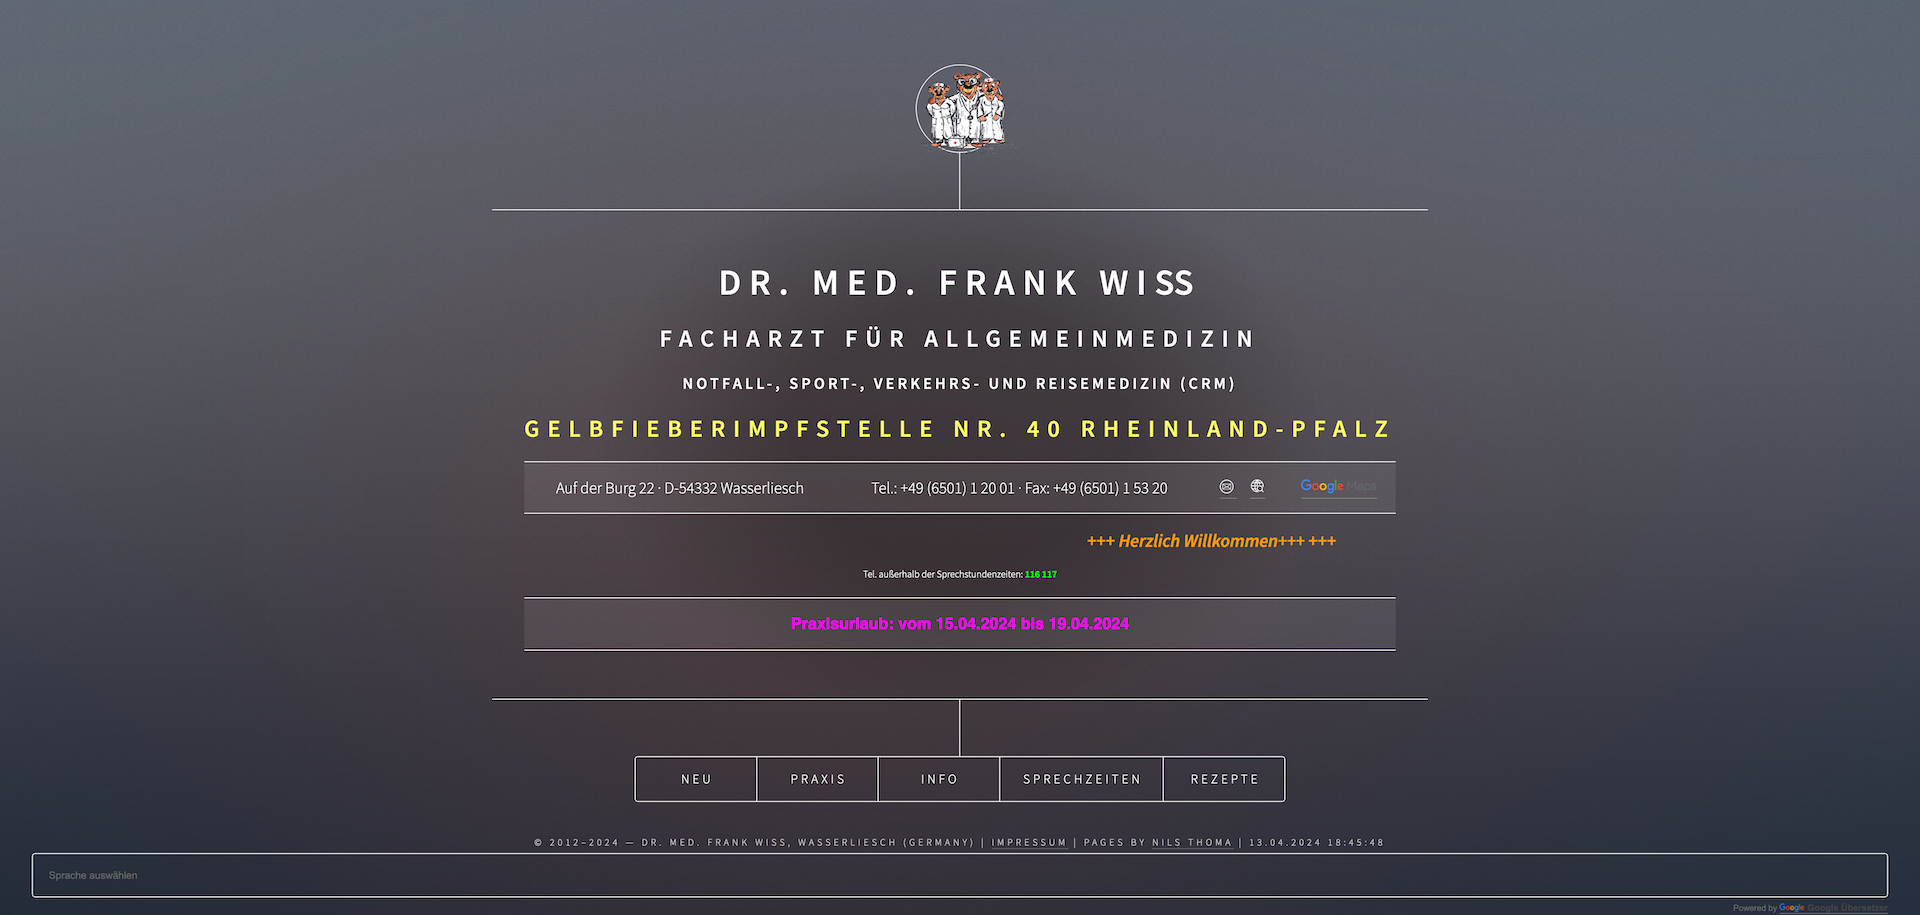 Dr. Frank Wiß